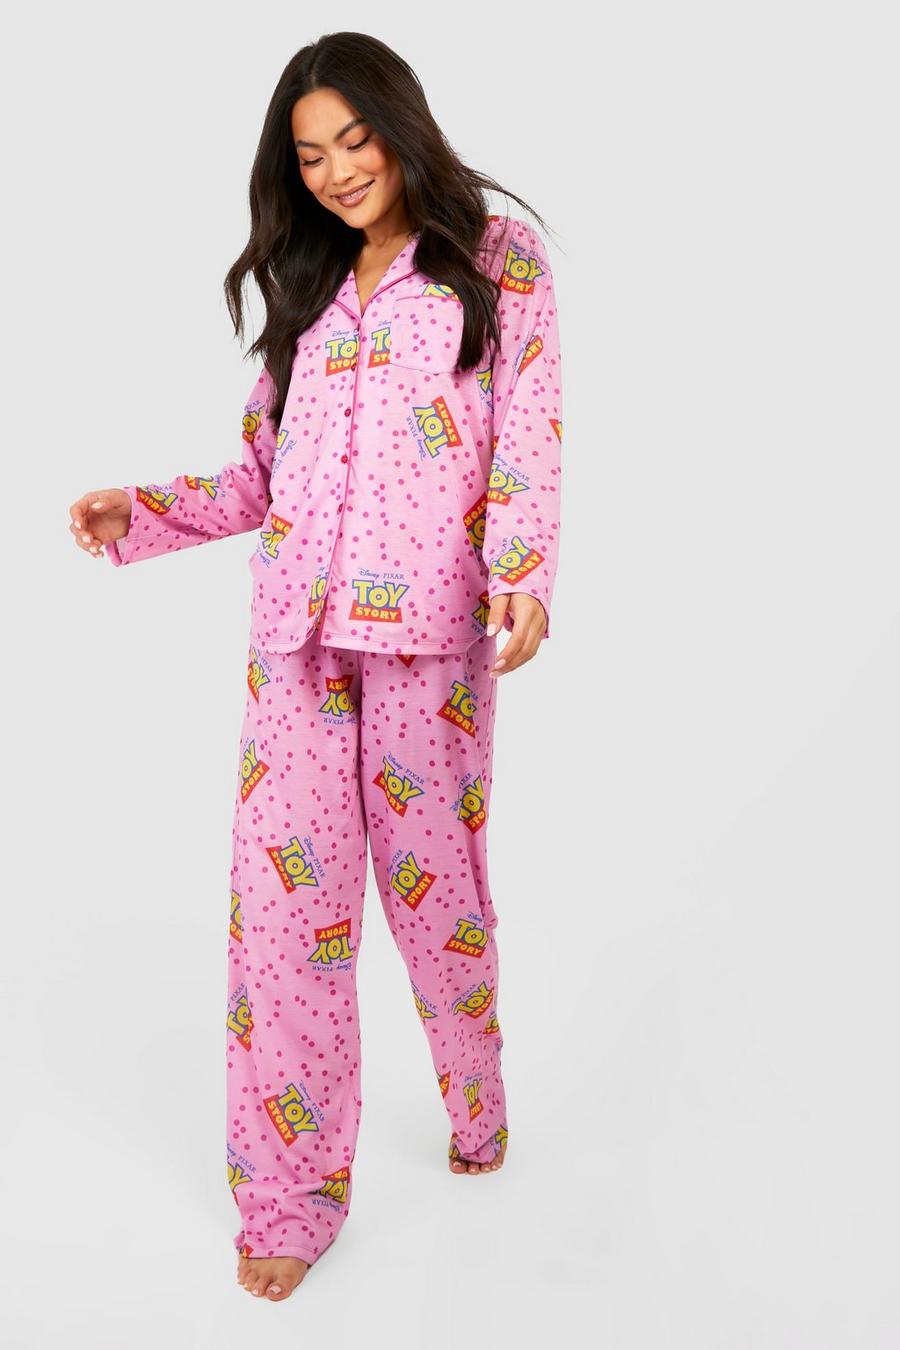 Pyjama Disney à imprimé Toy Story, Pink